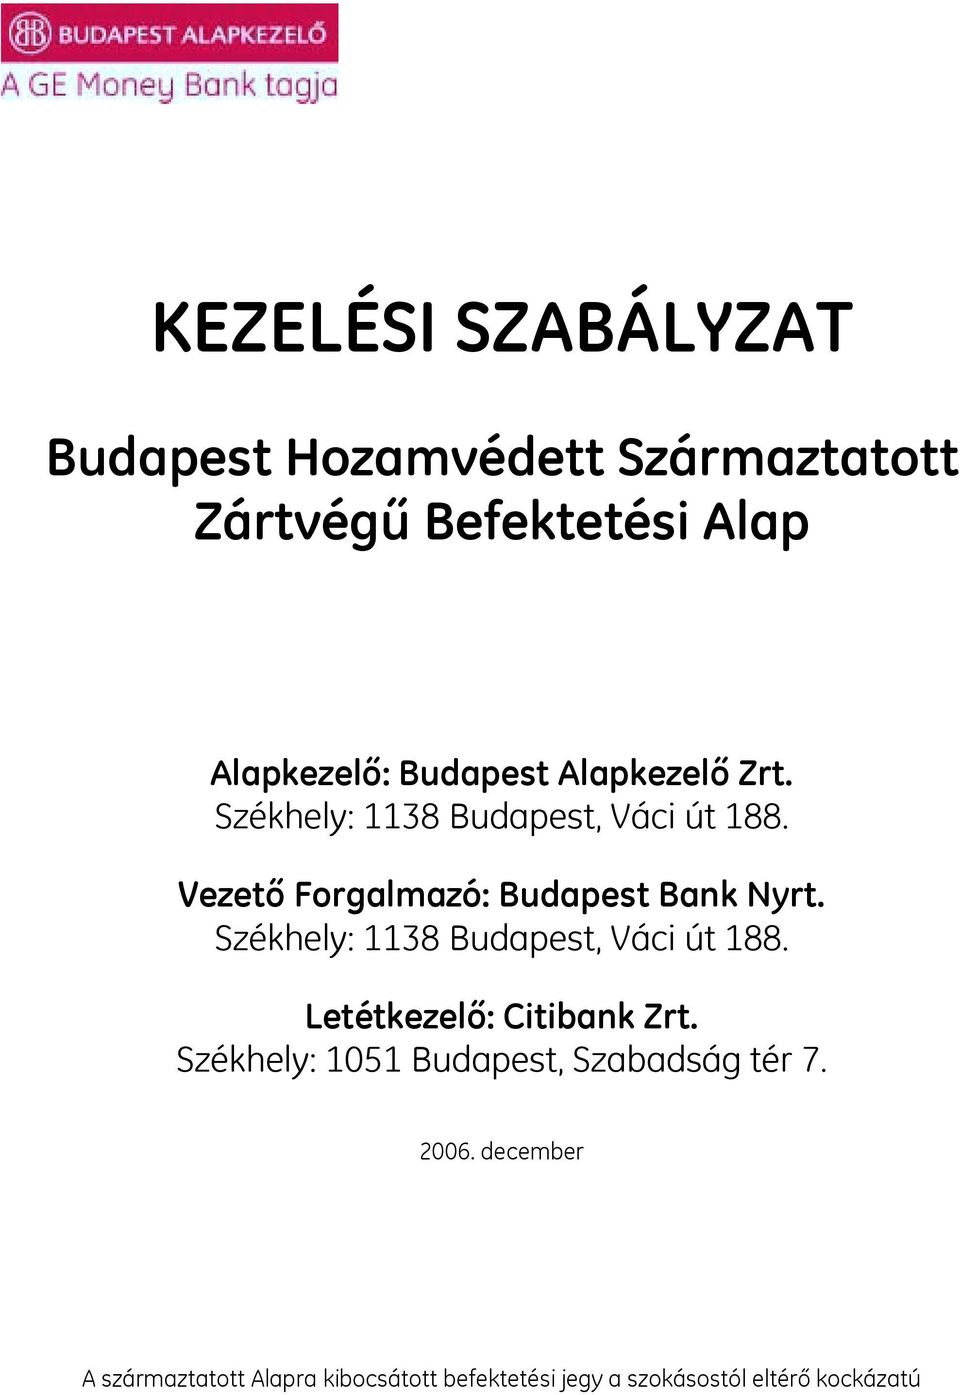 Vezető Forgalmazó: Budapest Bank Nyrt. Székhely: 1138 Budapest, Váci út 188.